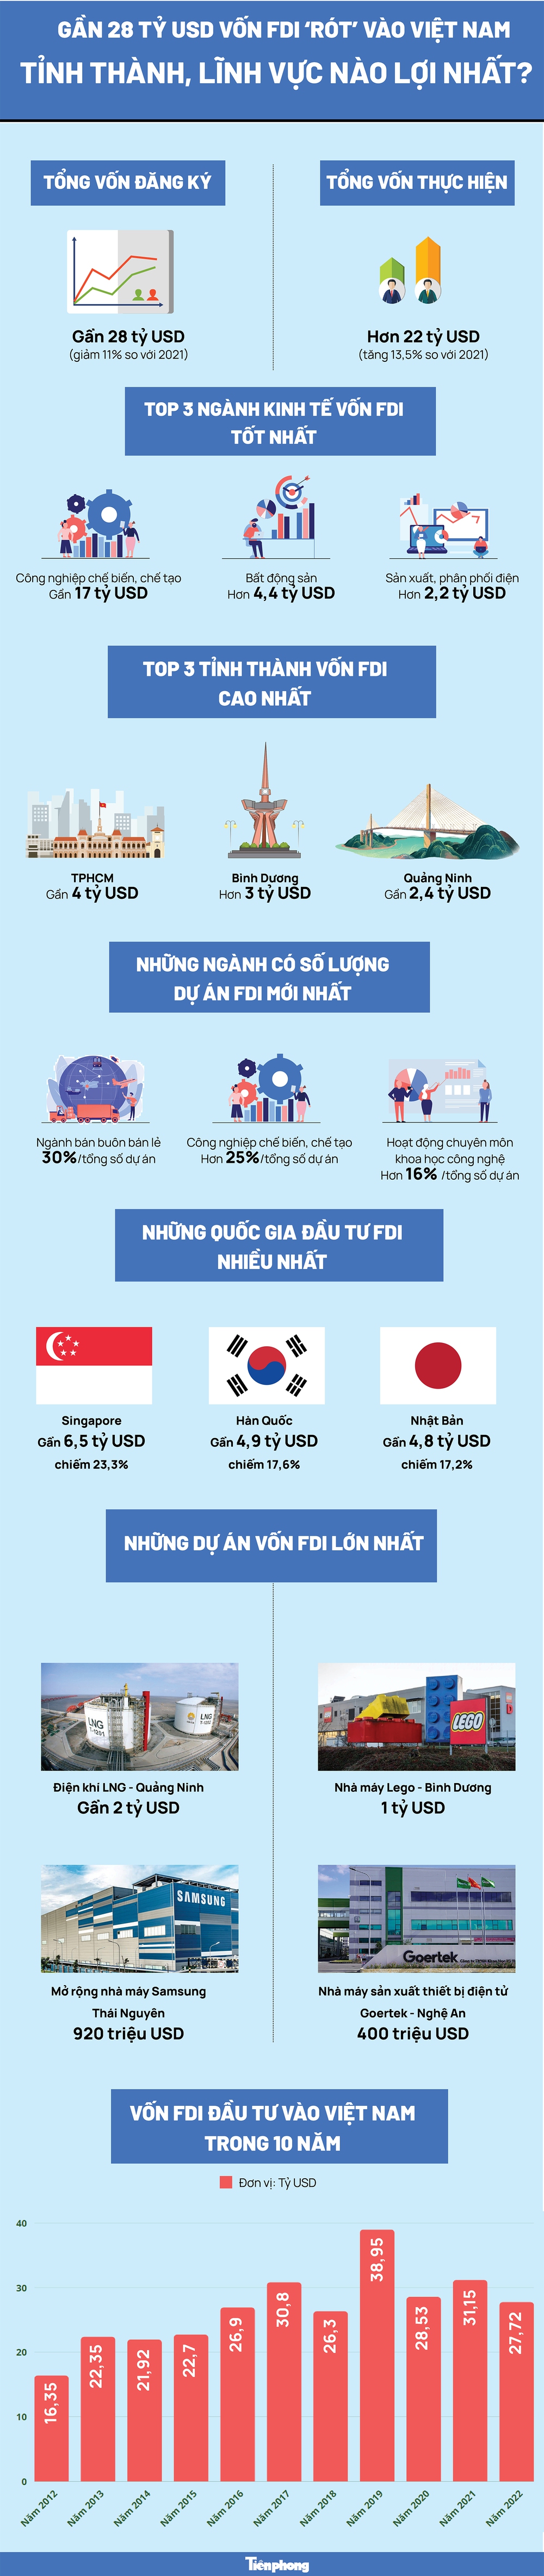 Gần 28 tỷ USD vốn FDI ‘rót’ vào Việt Nam: Tỉnh thành, lĩnh vực nào lợi nhất? - Ảnh 1.